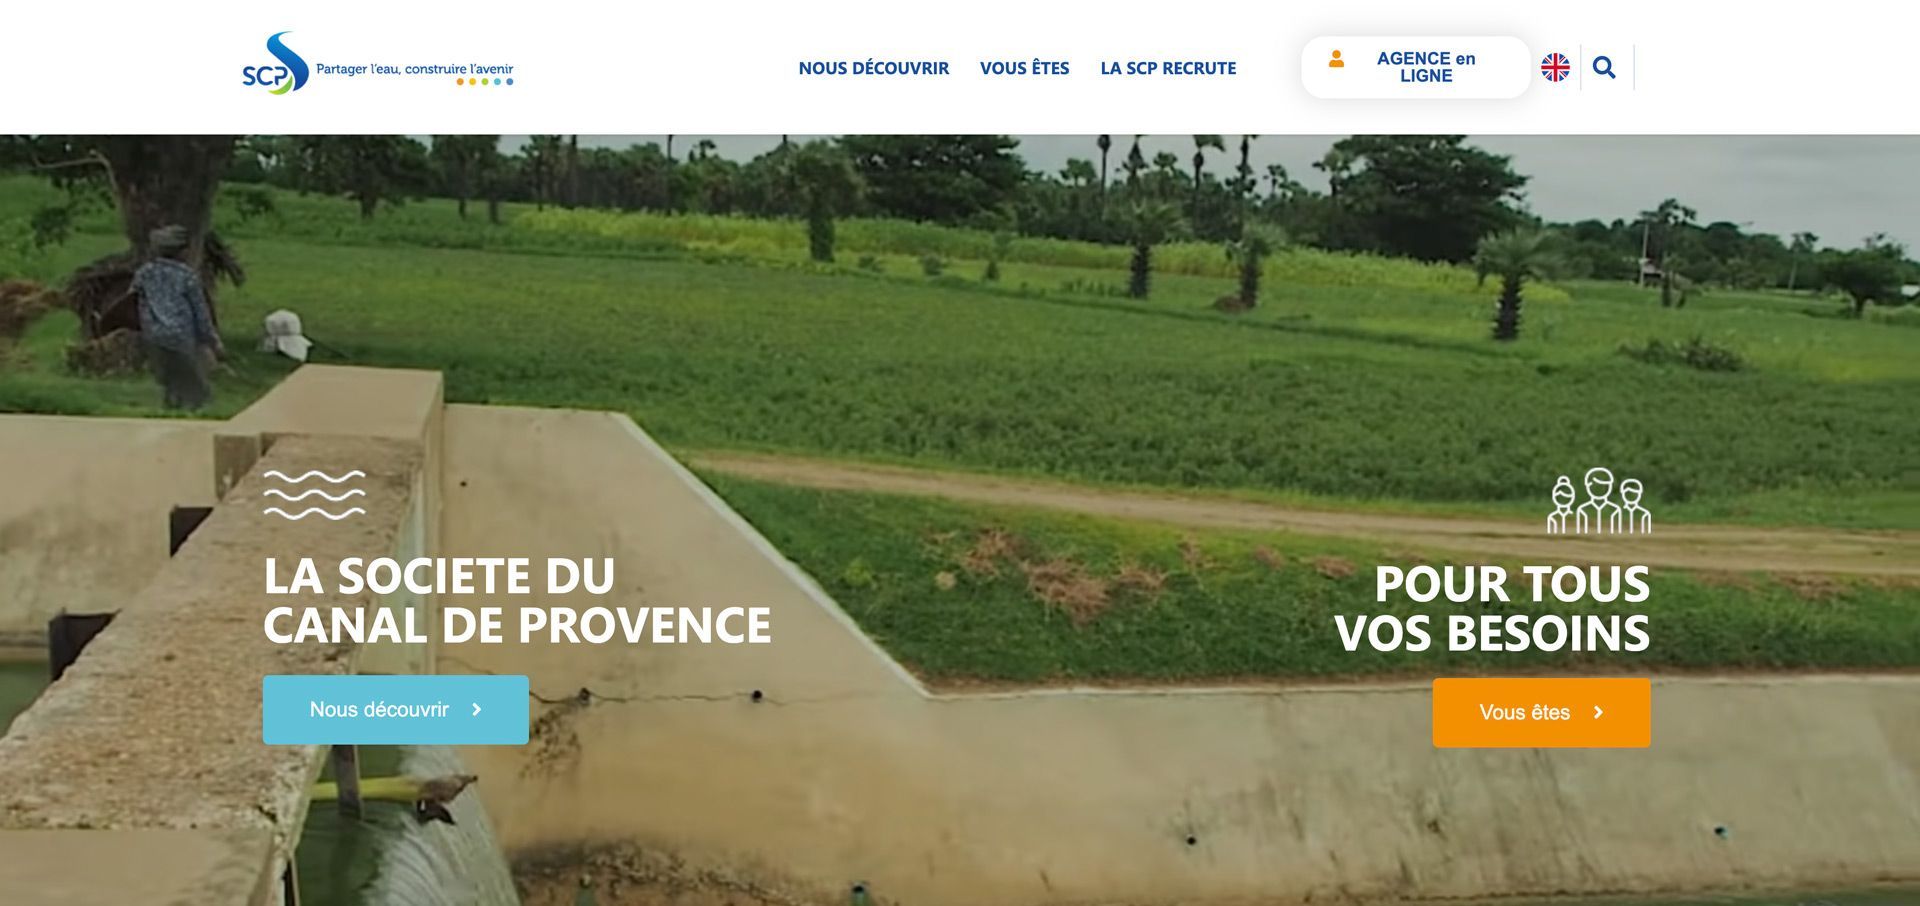 WSI accompagne la Société du Canal de Provence depuis 2017 dans sa transformation digitale.